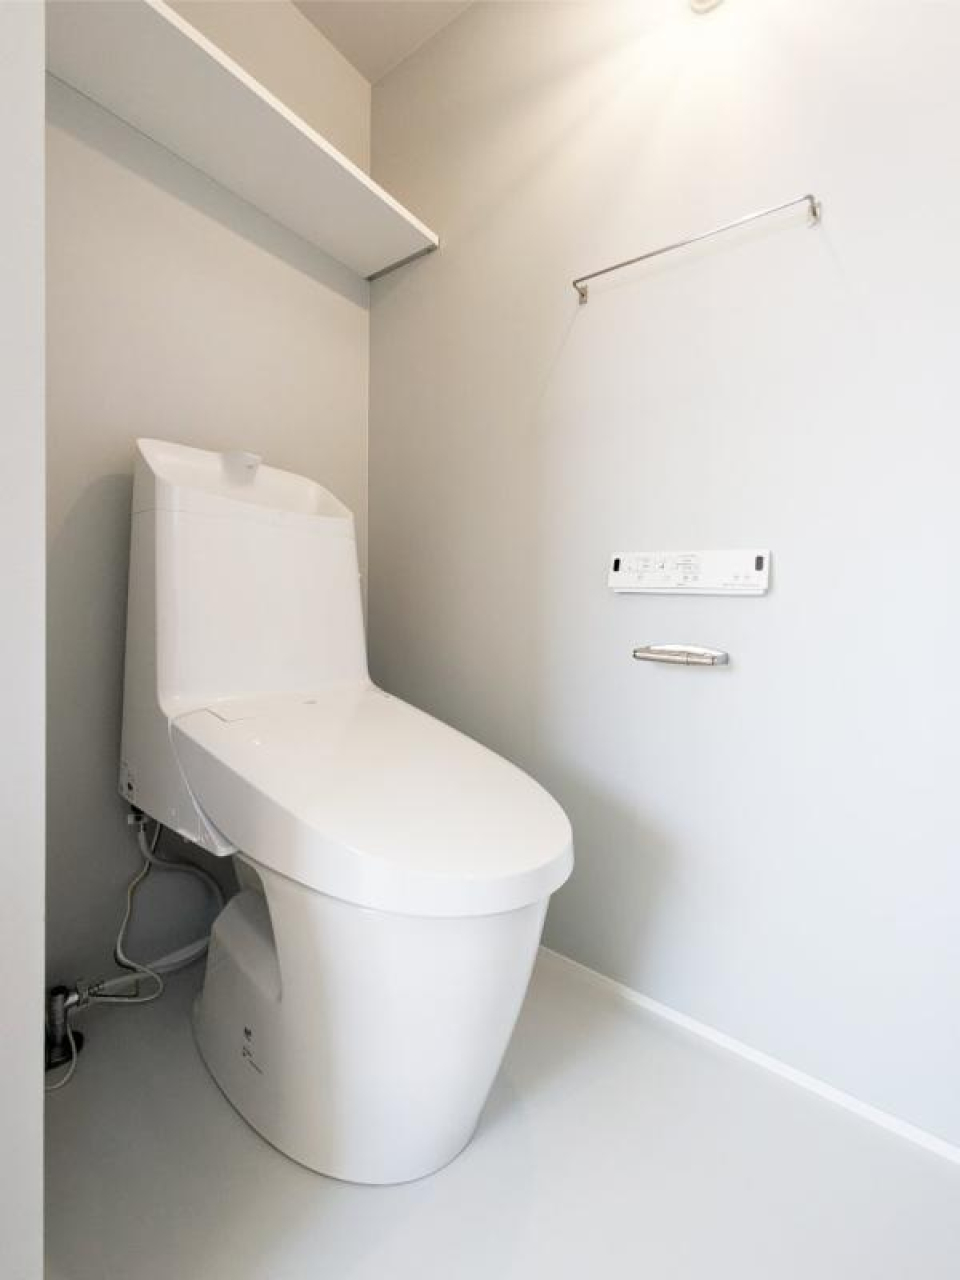 トイレも凸凹の少ないシンプルなデザインで、こだわりを感じます。